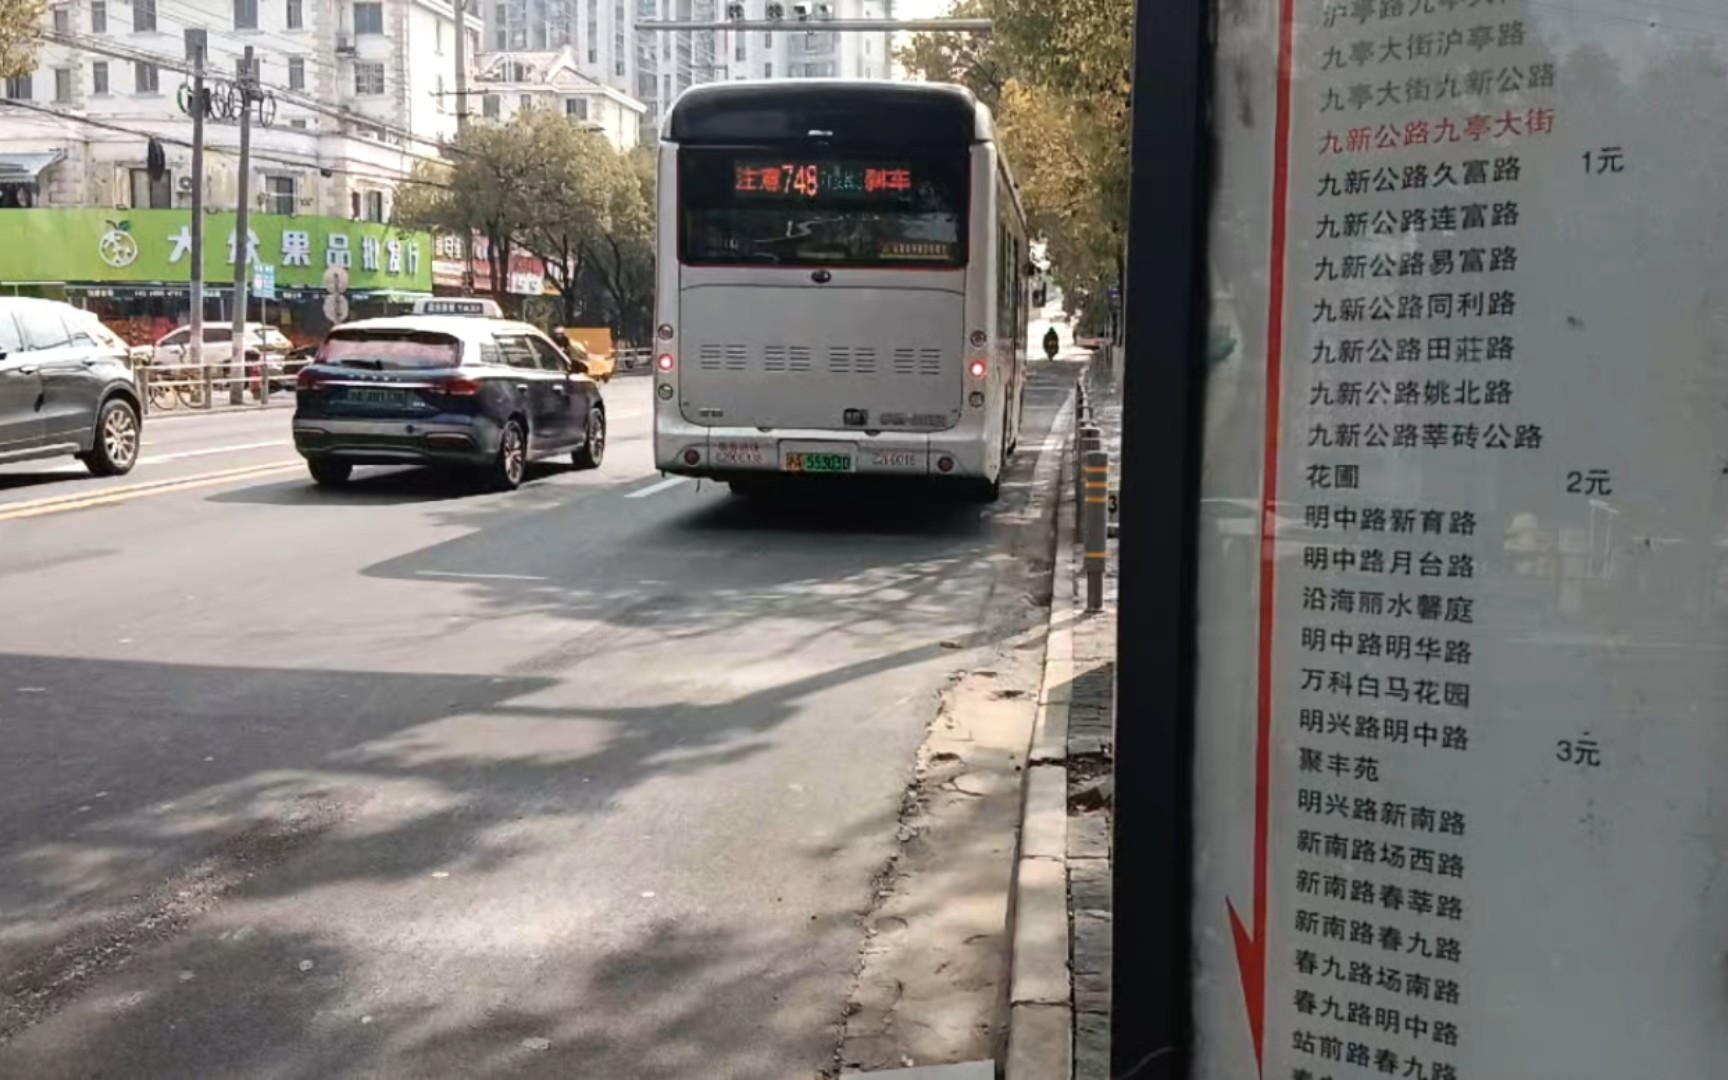 上海公交748路图片